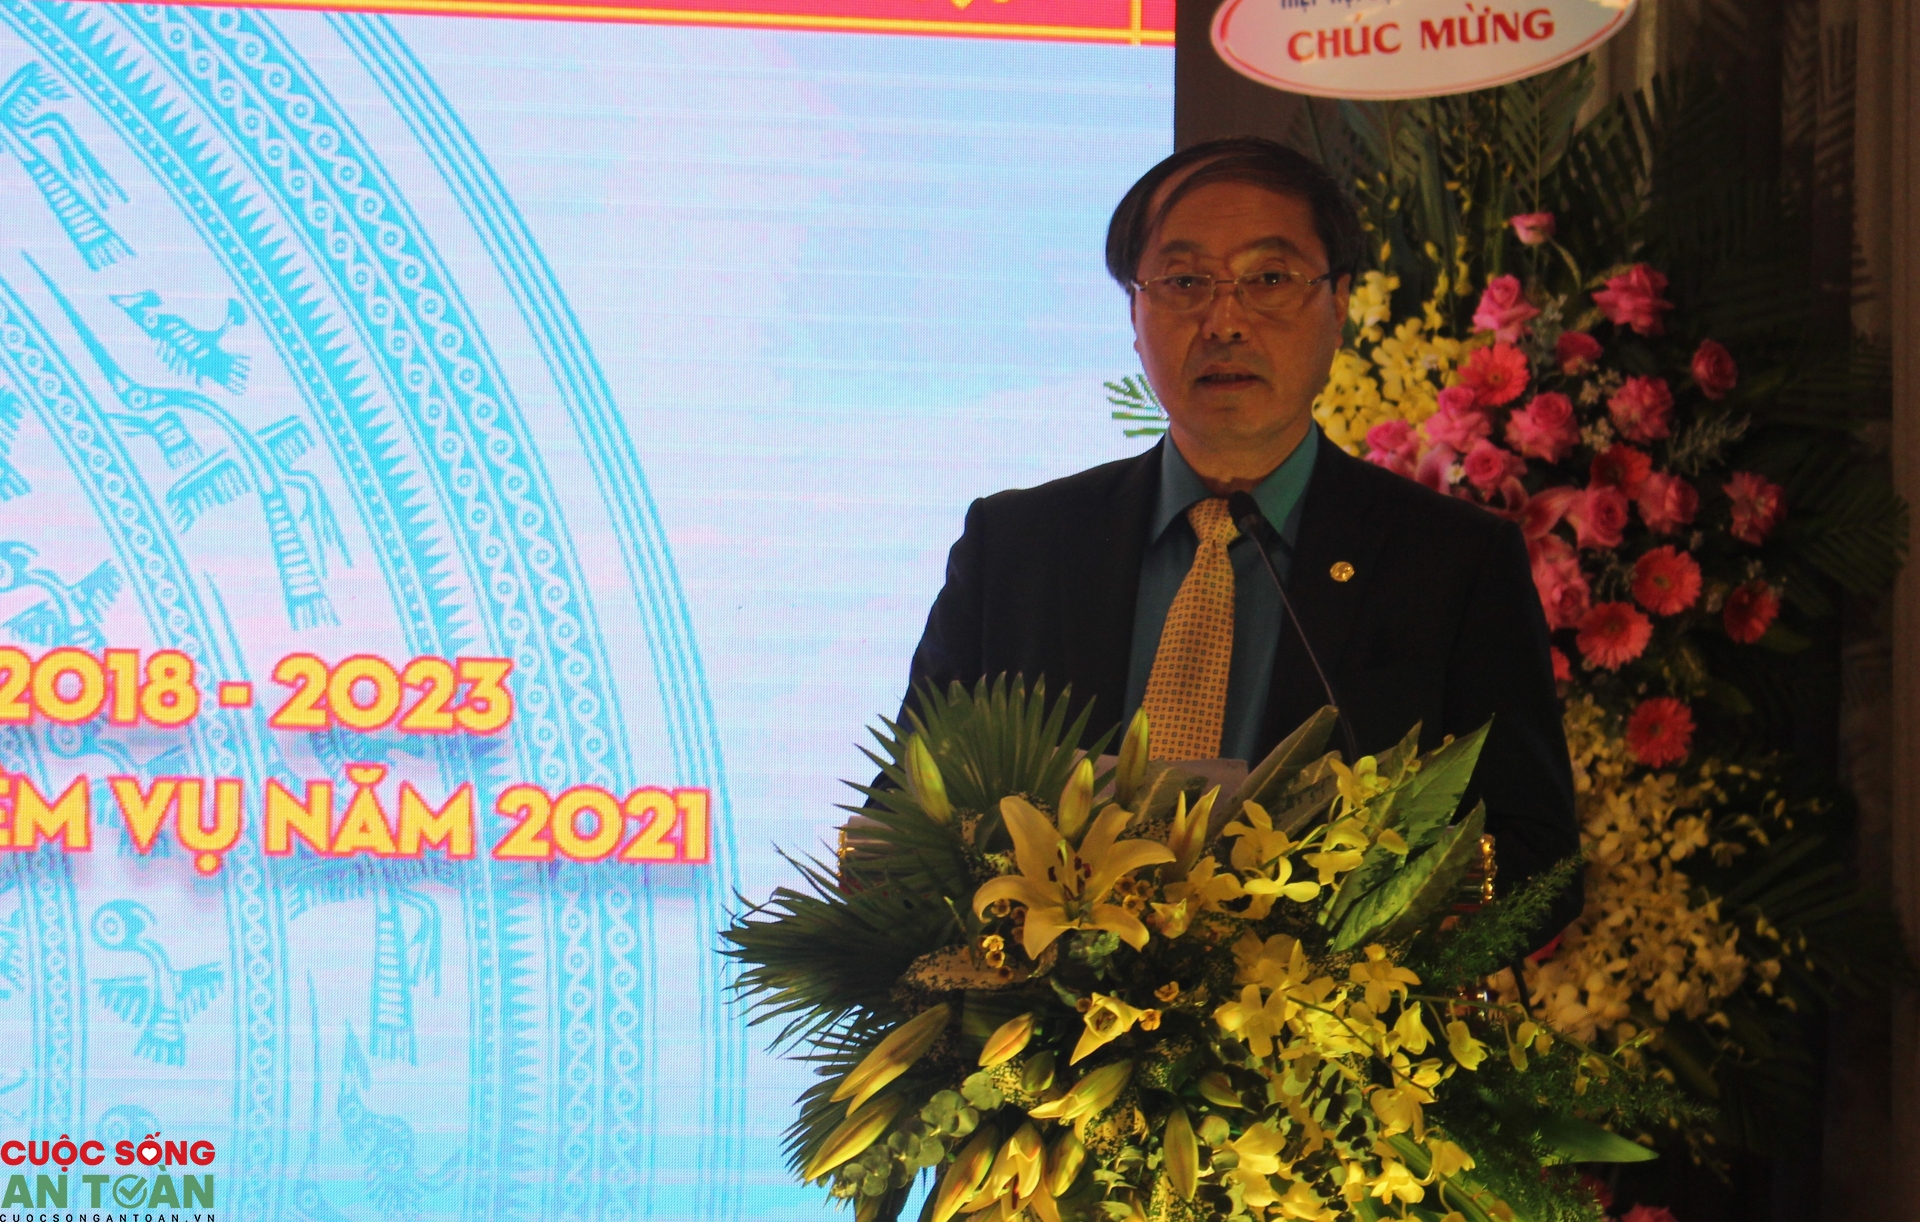 Công đoàn Dệt may Việt Nam vinh danh 20 doanh nghiệp an toàn tiêu biểu năm 2020